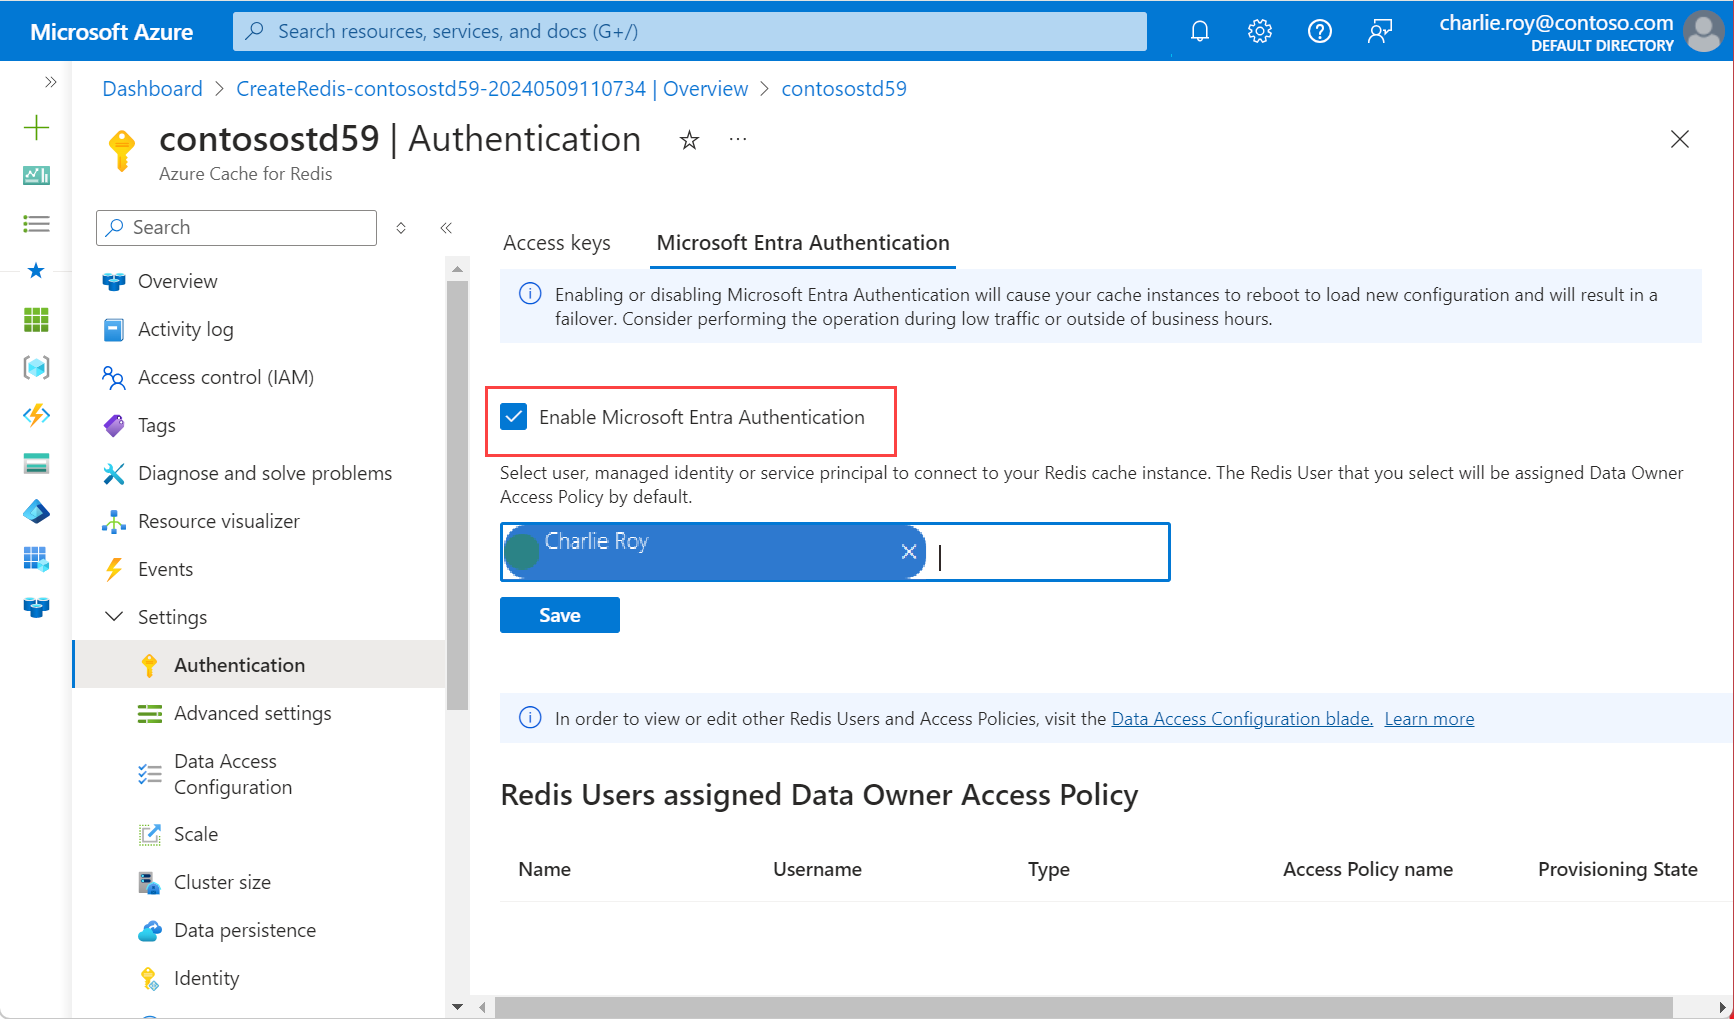 Captura de pantalla que muestra la autenticación seleccionada en el menú de recursos y la habilitación de la autenticación de Microsoft Entra activada.